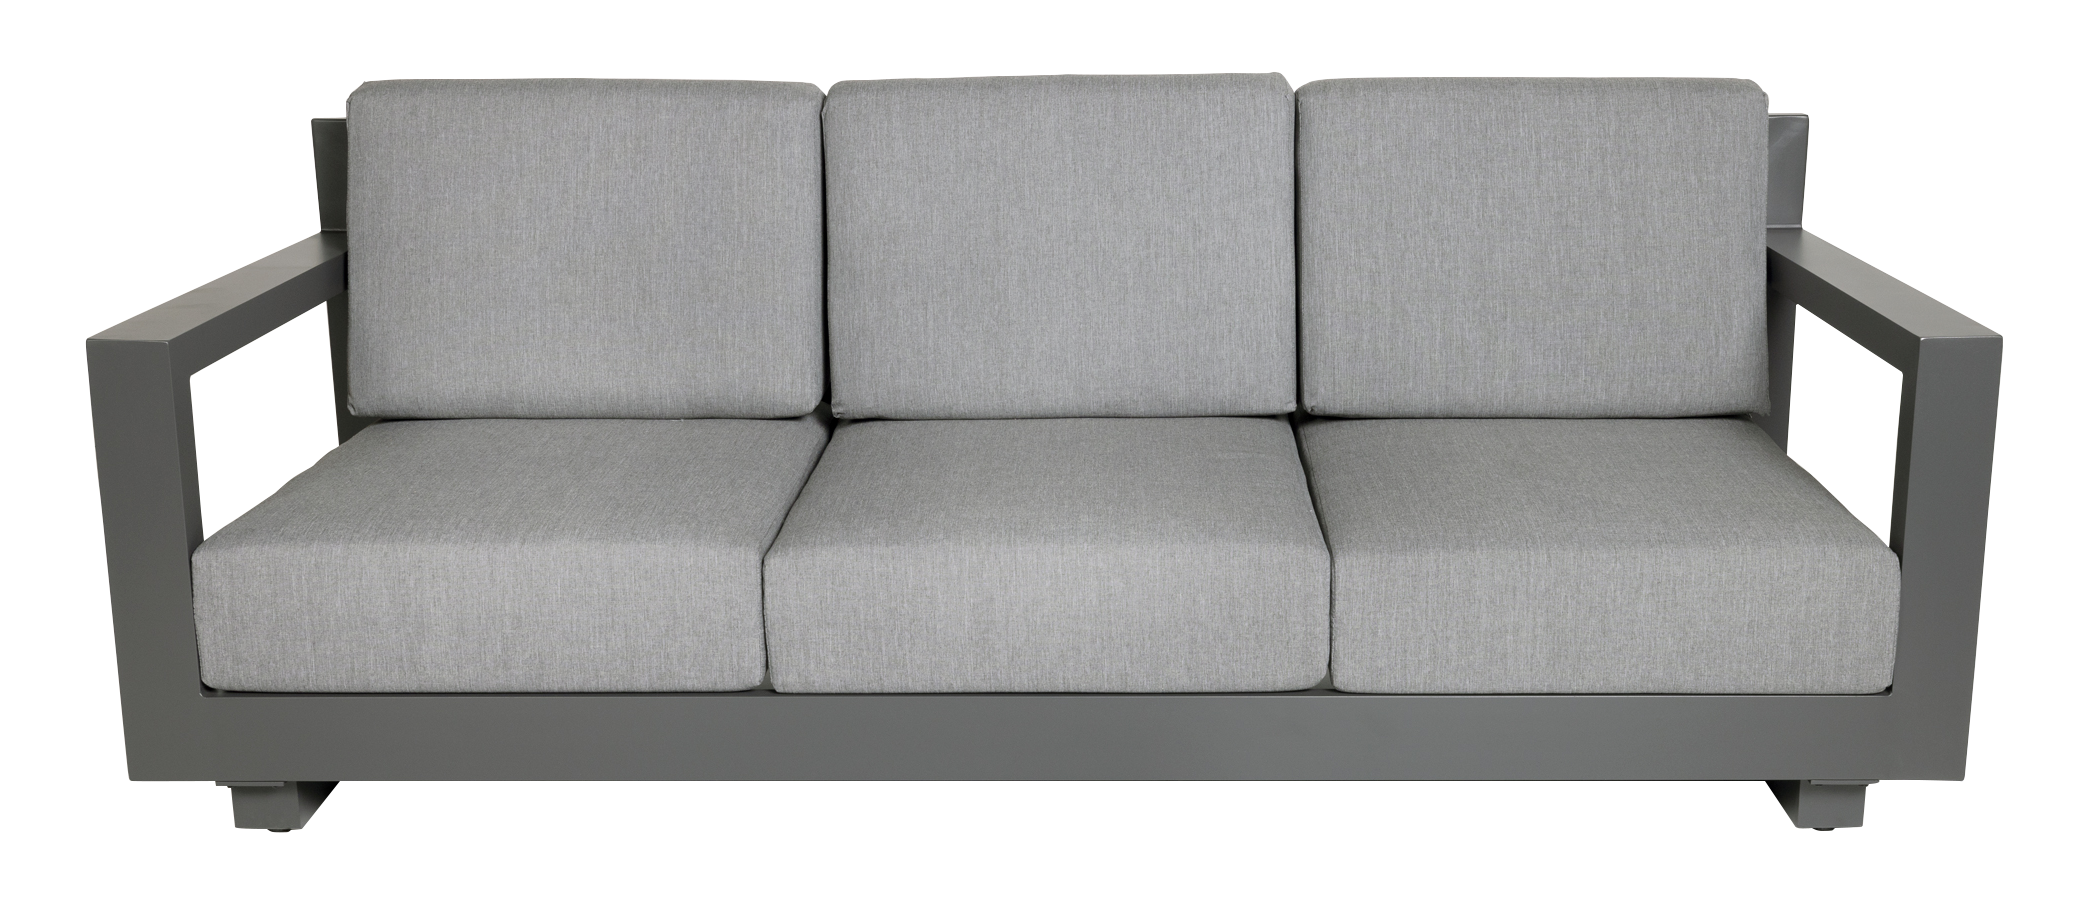 Sofá de jardín luca de aluminio antracita con cojín 3 plazas